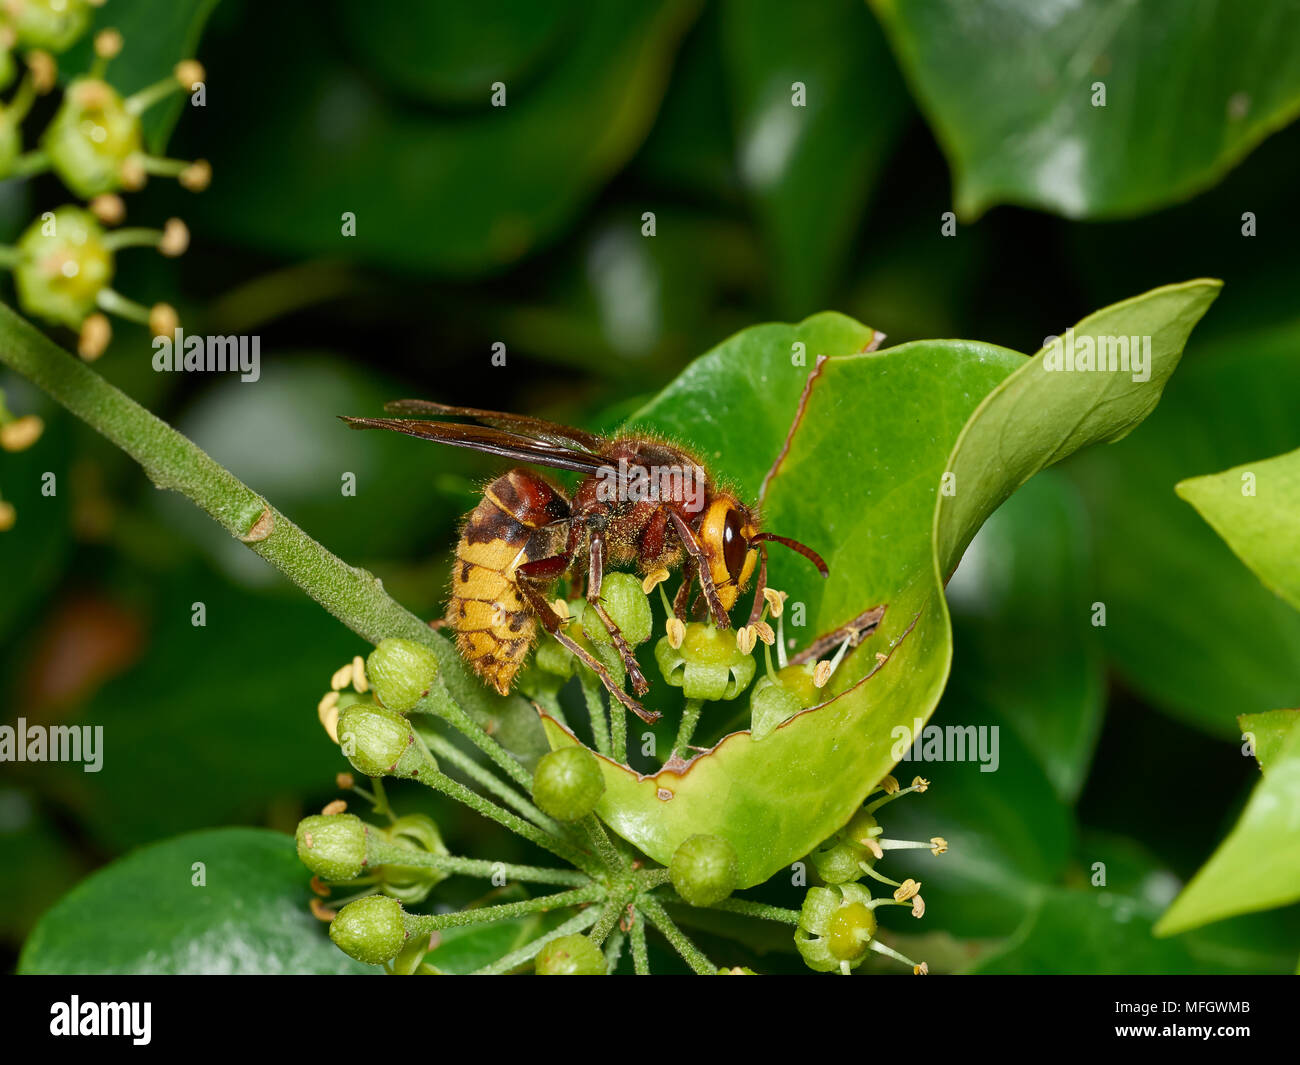 Frelon (Vespa crabro) se nourrissent de nectar de fleurs de lierre Sussex, Angleterre Banque D'Images